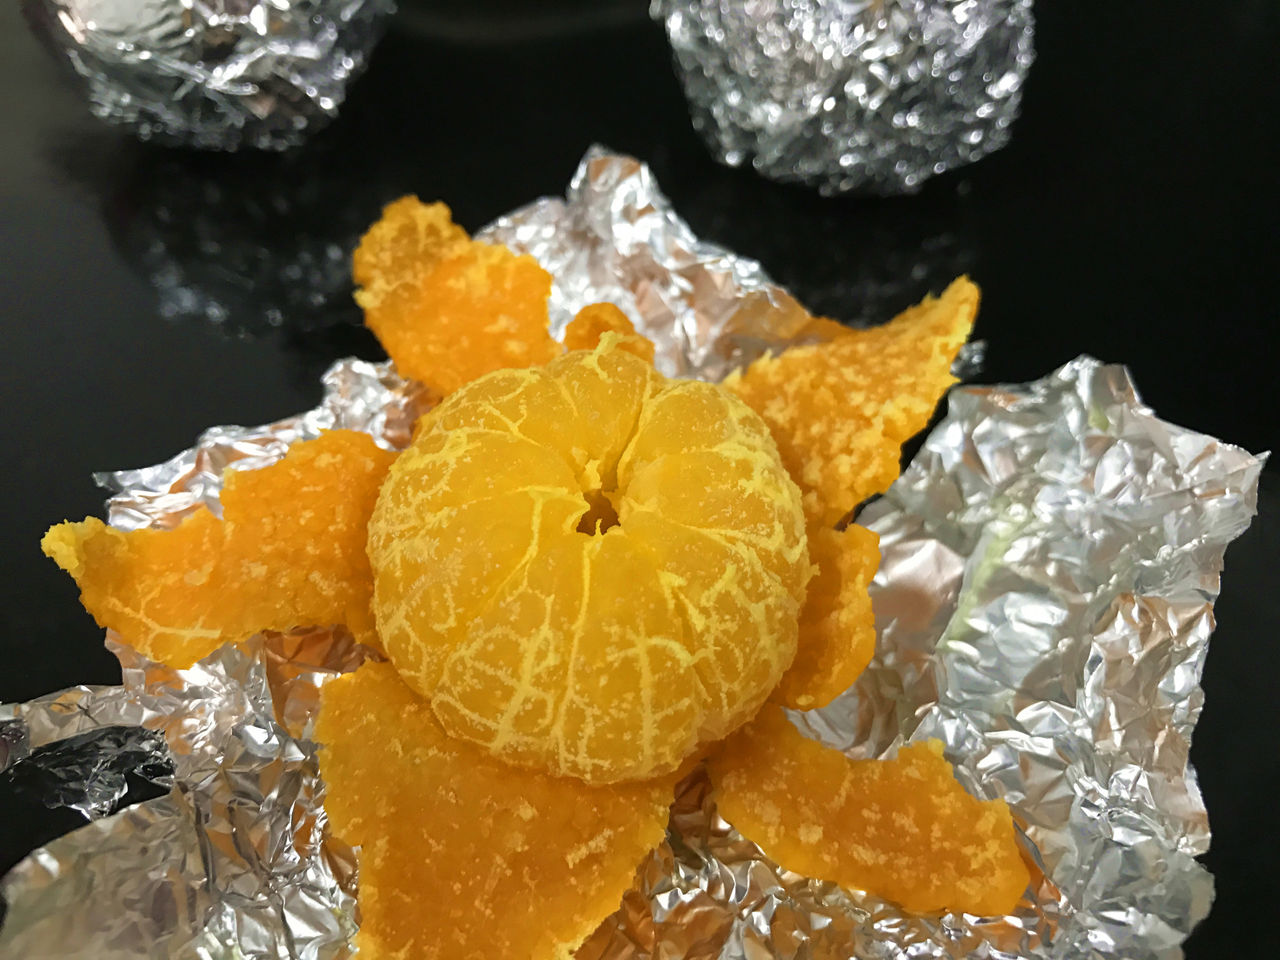 烤橘子